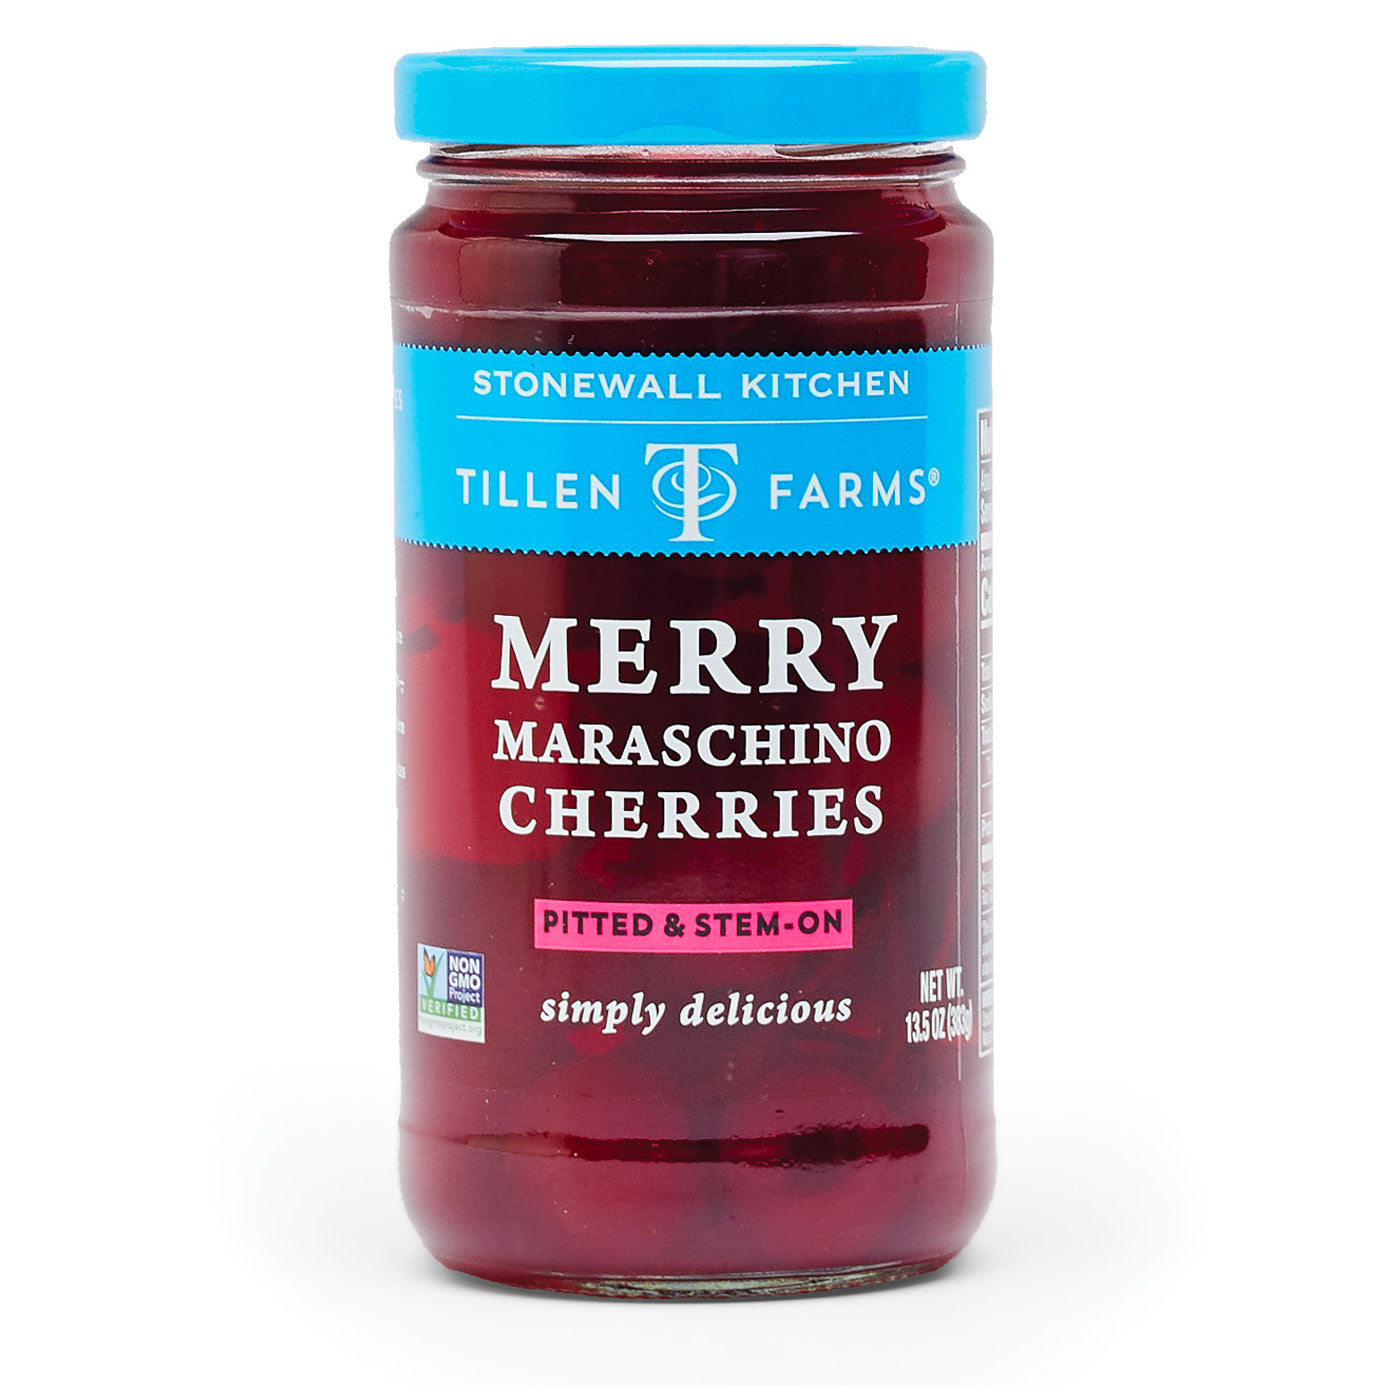 Tillen Farms Merry Maraschino Cherries 13.5 oz